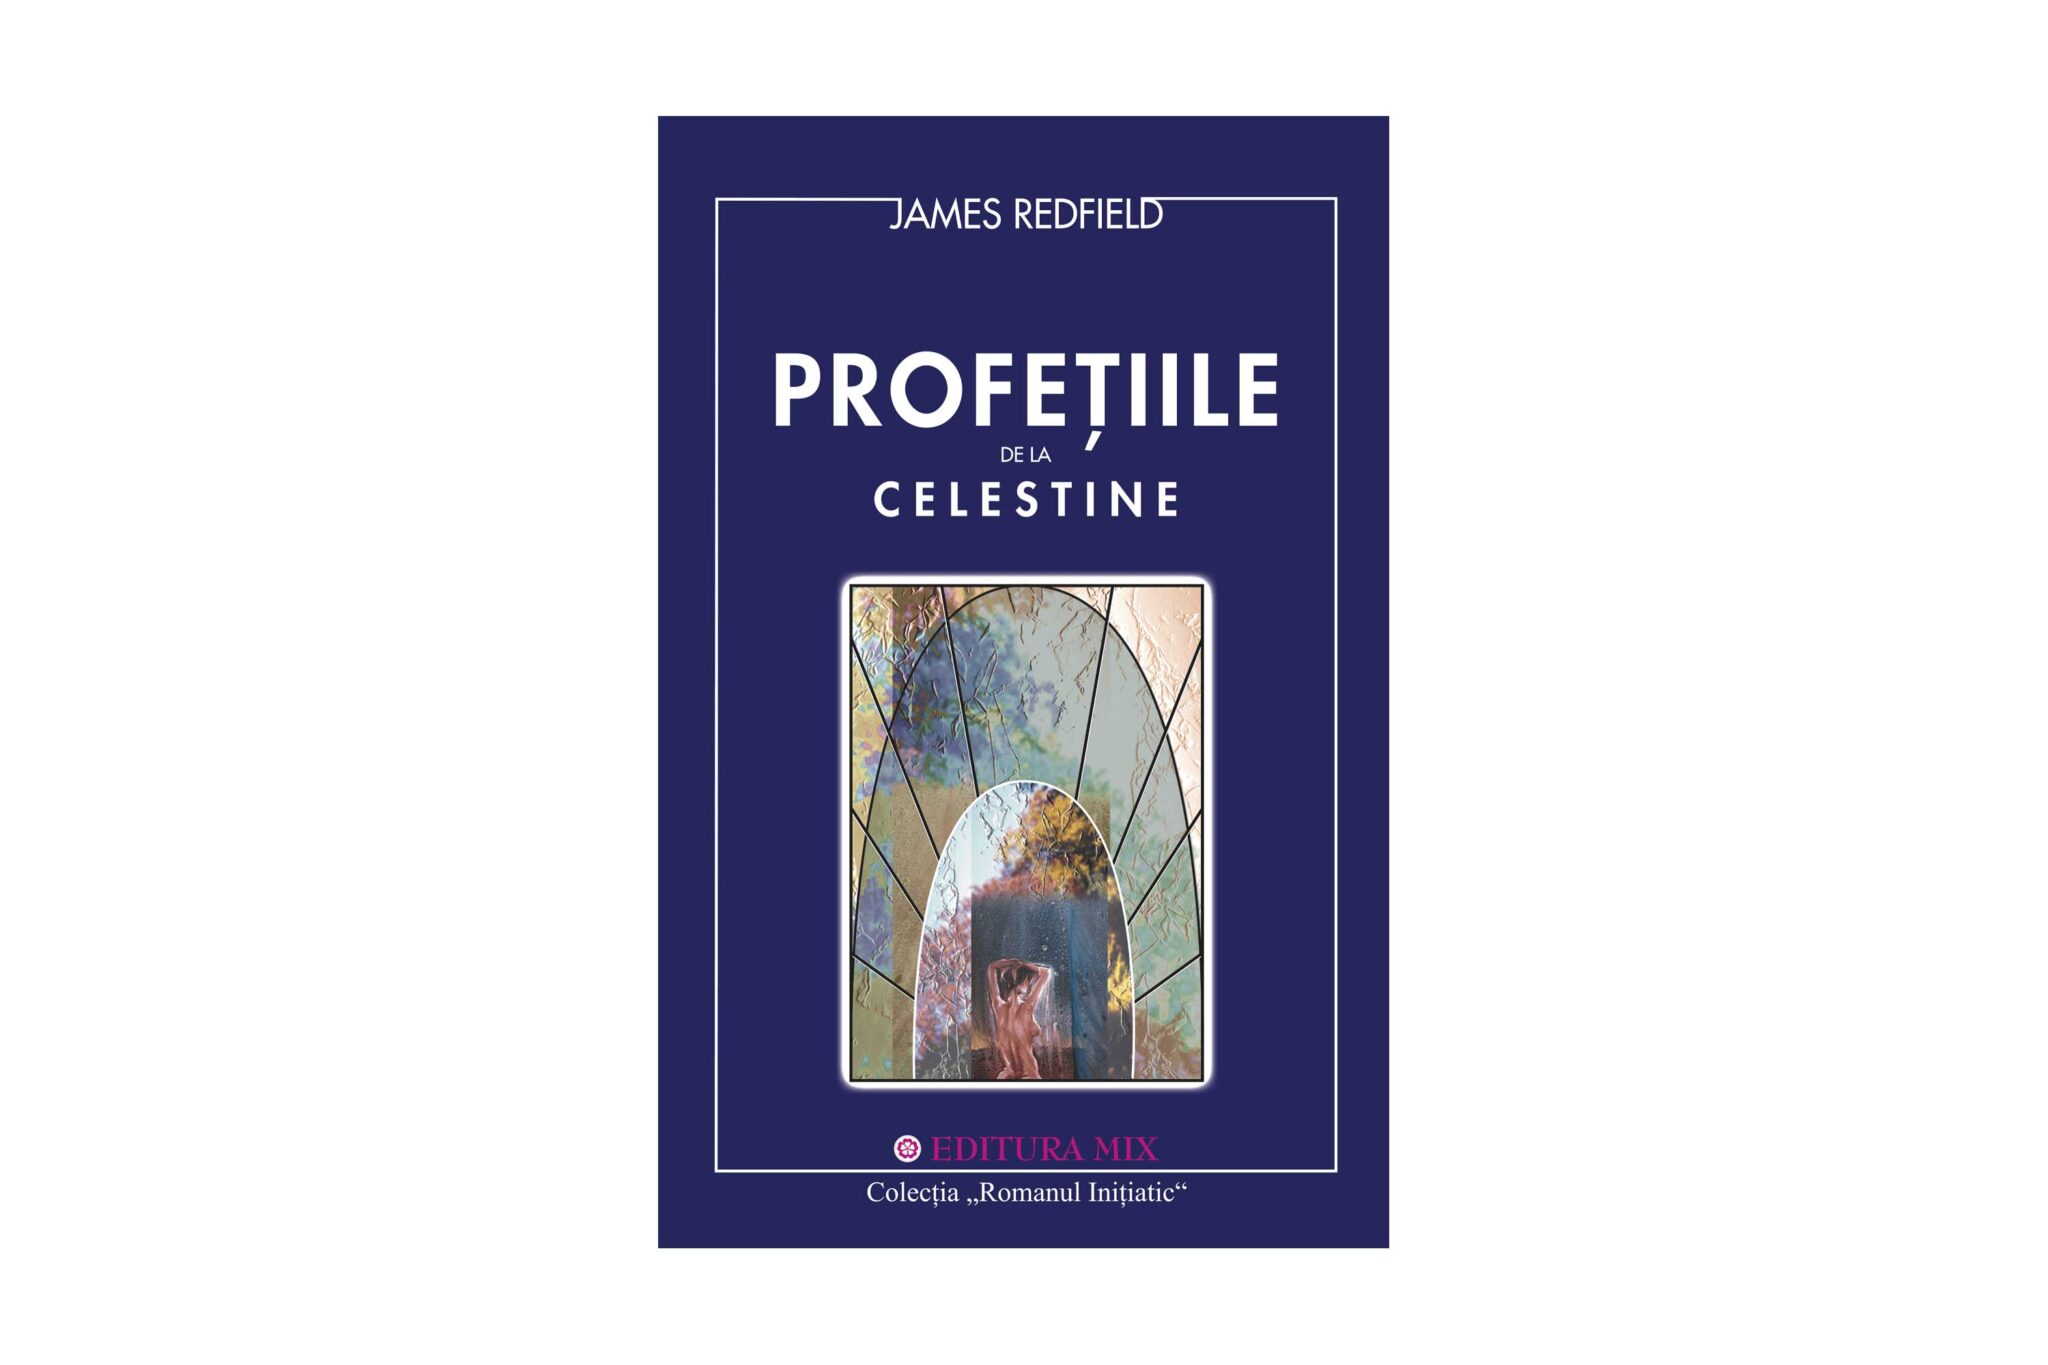 Profețiile de la Celestine | James Redfield